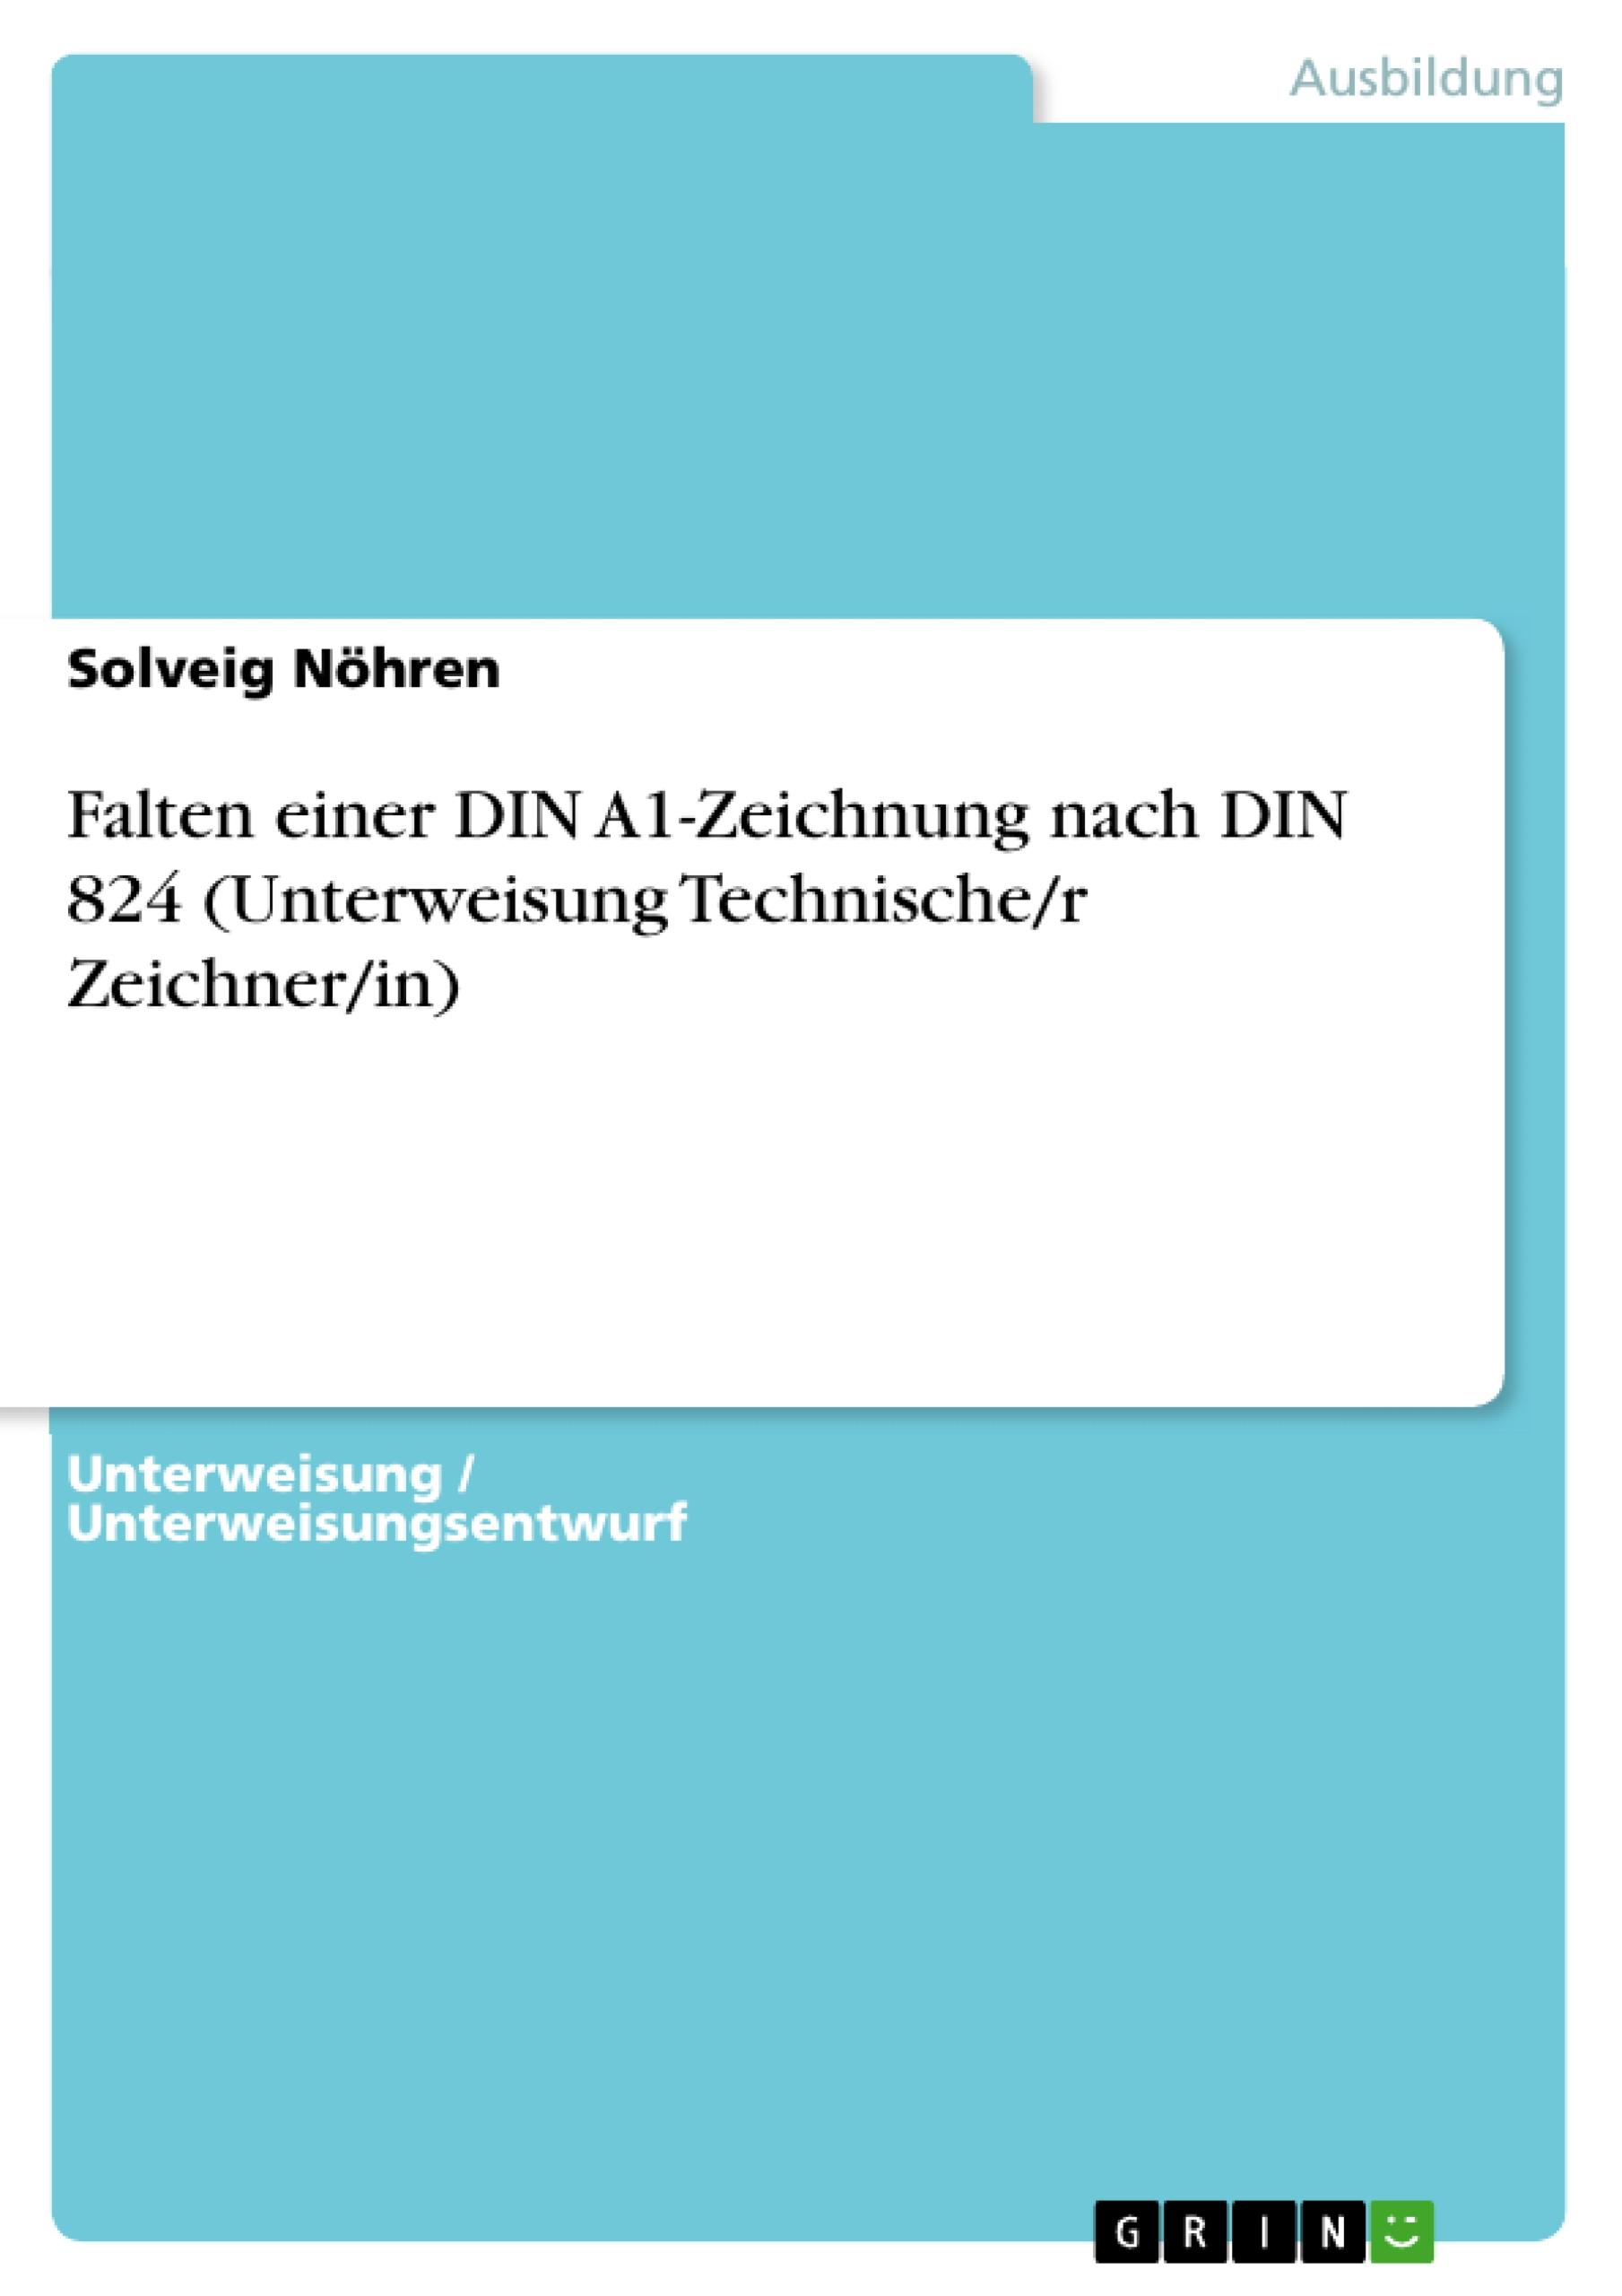 Falten einer DIN A1-Zeichnung nach DIN 824 (Unterweisung Technische/r Zeichner/in) - NÃ¶hren, Solveig